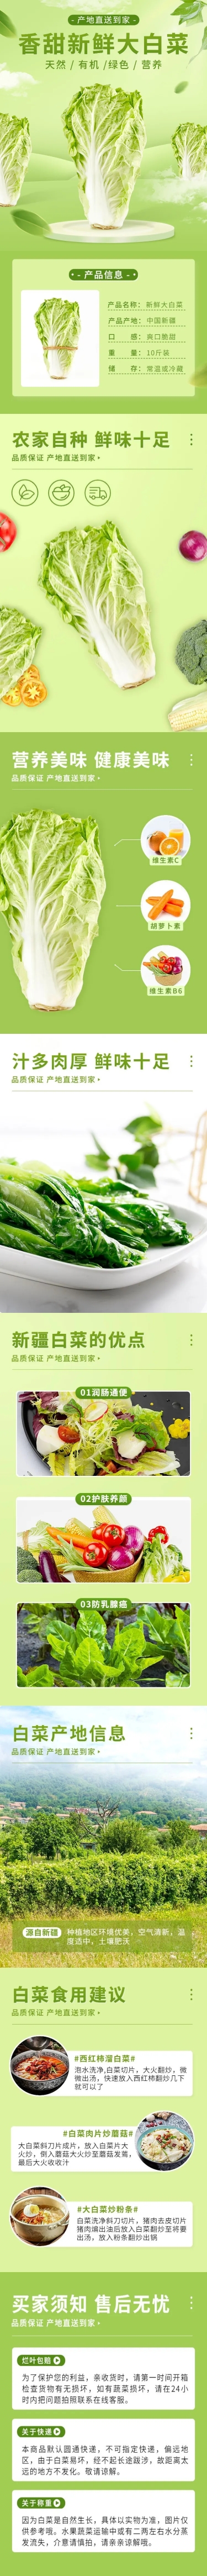 电商食品蔬菜大白菜详情页